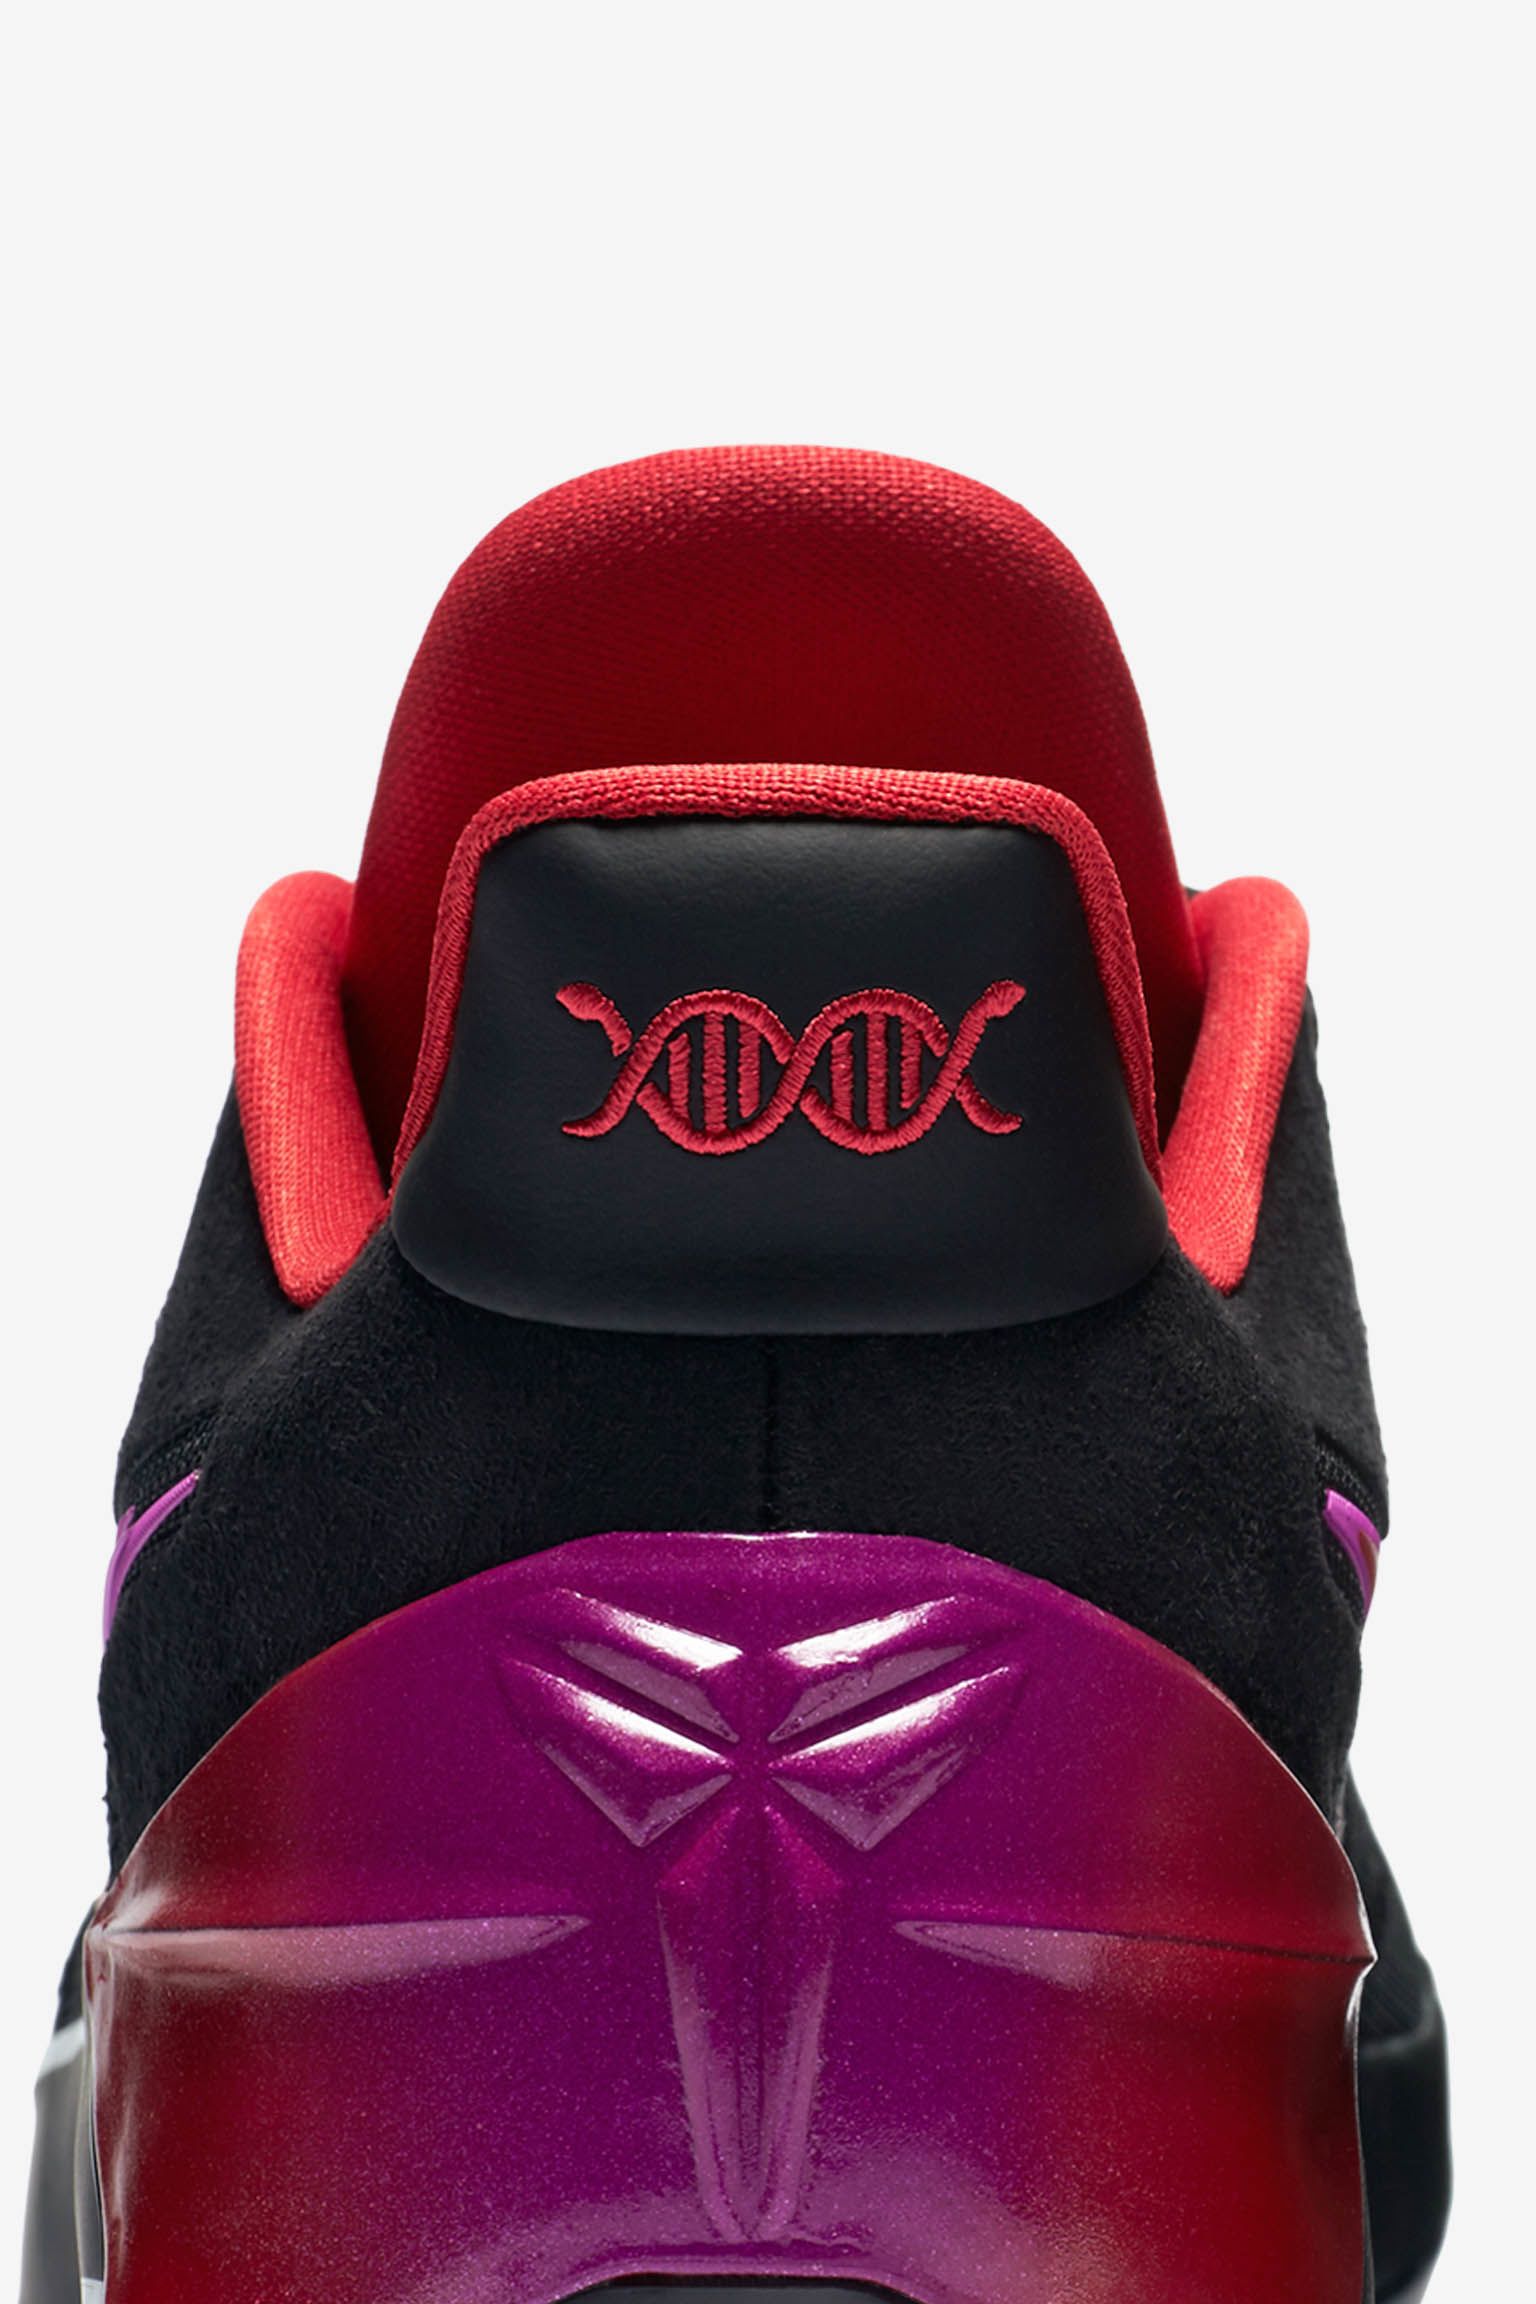 ナイキ コービー A.D.'Black & Hyper Violet' 発売日. Nike SNKRS JP